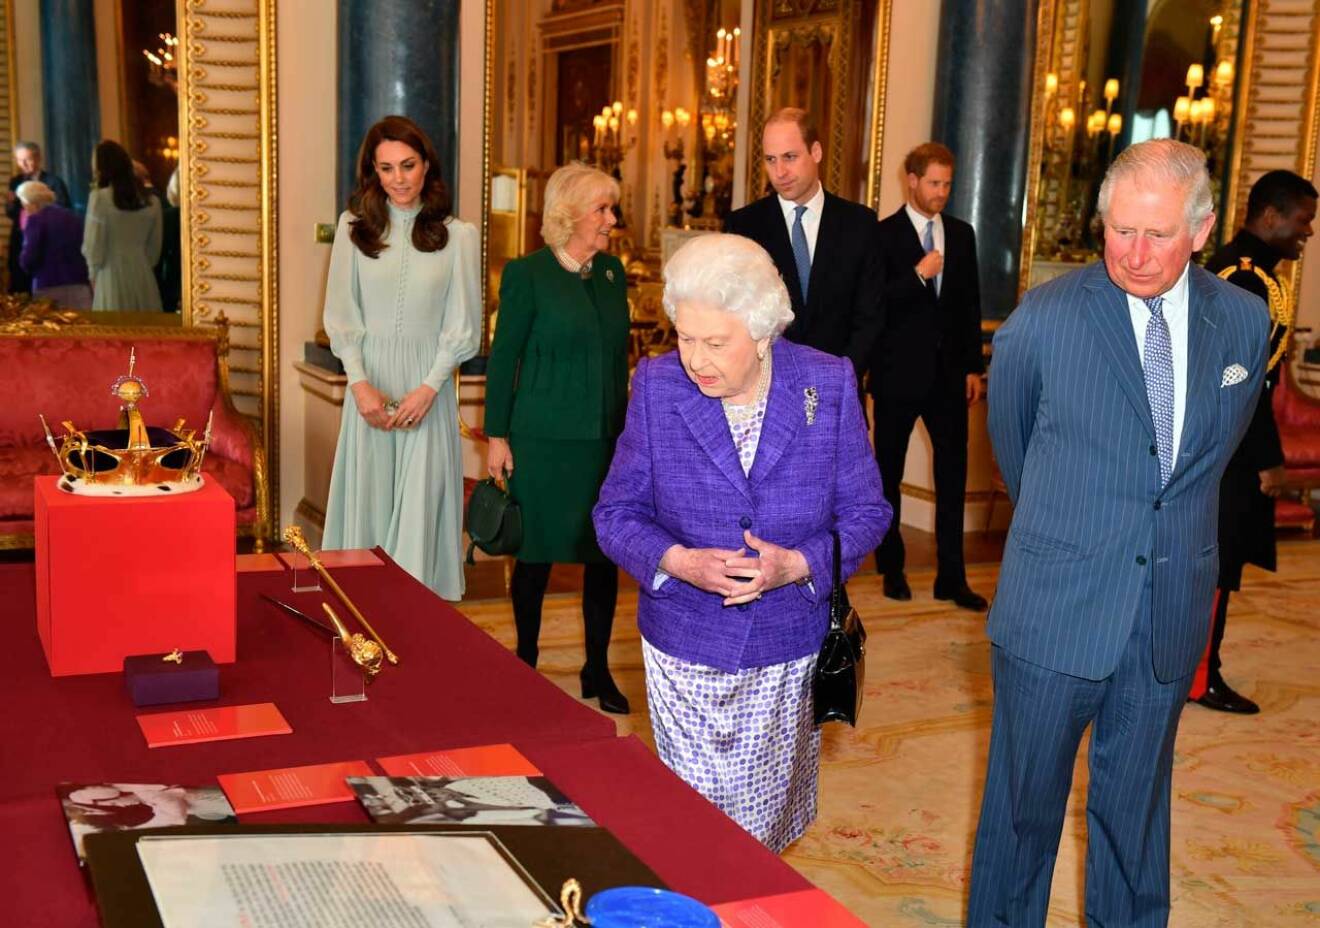 På bordet ligger kronan och spiran som användes när prins Charles installerades som prins av Wales.